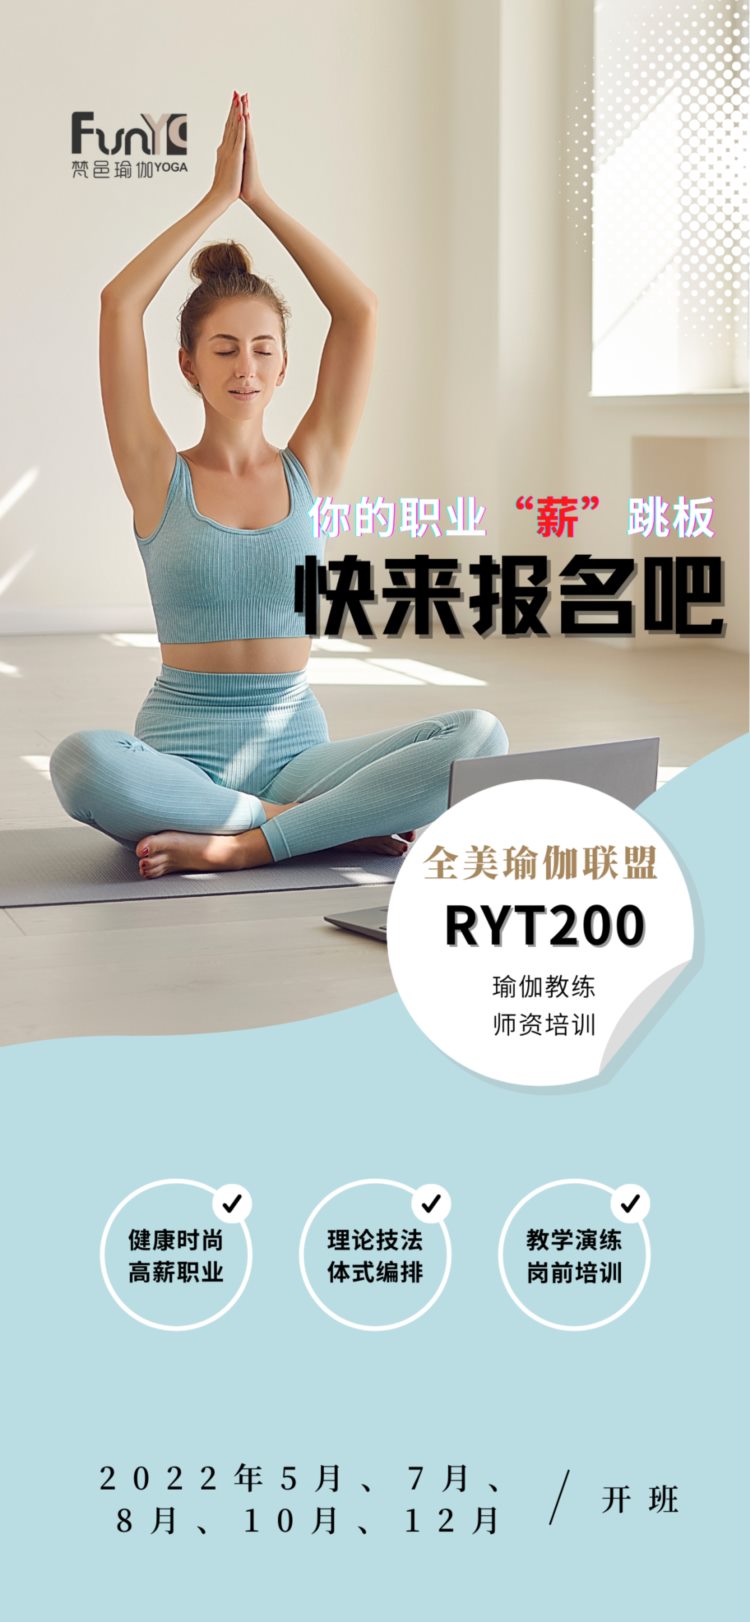 梵邑瑜伽学院 | 2022年《RYT200全美瑜伽联盟认证教练班》即将开班